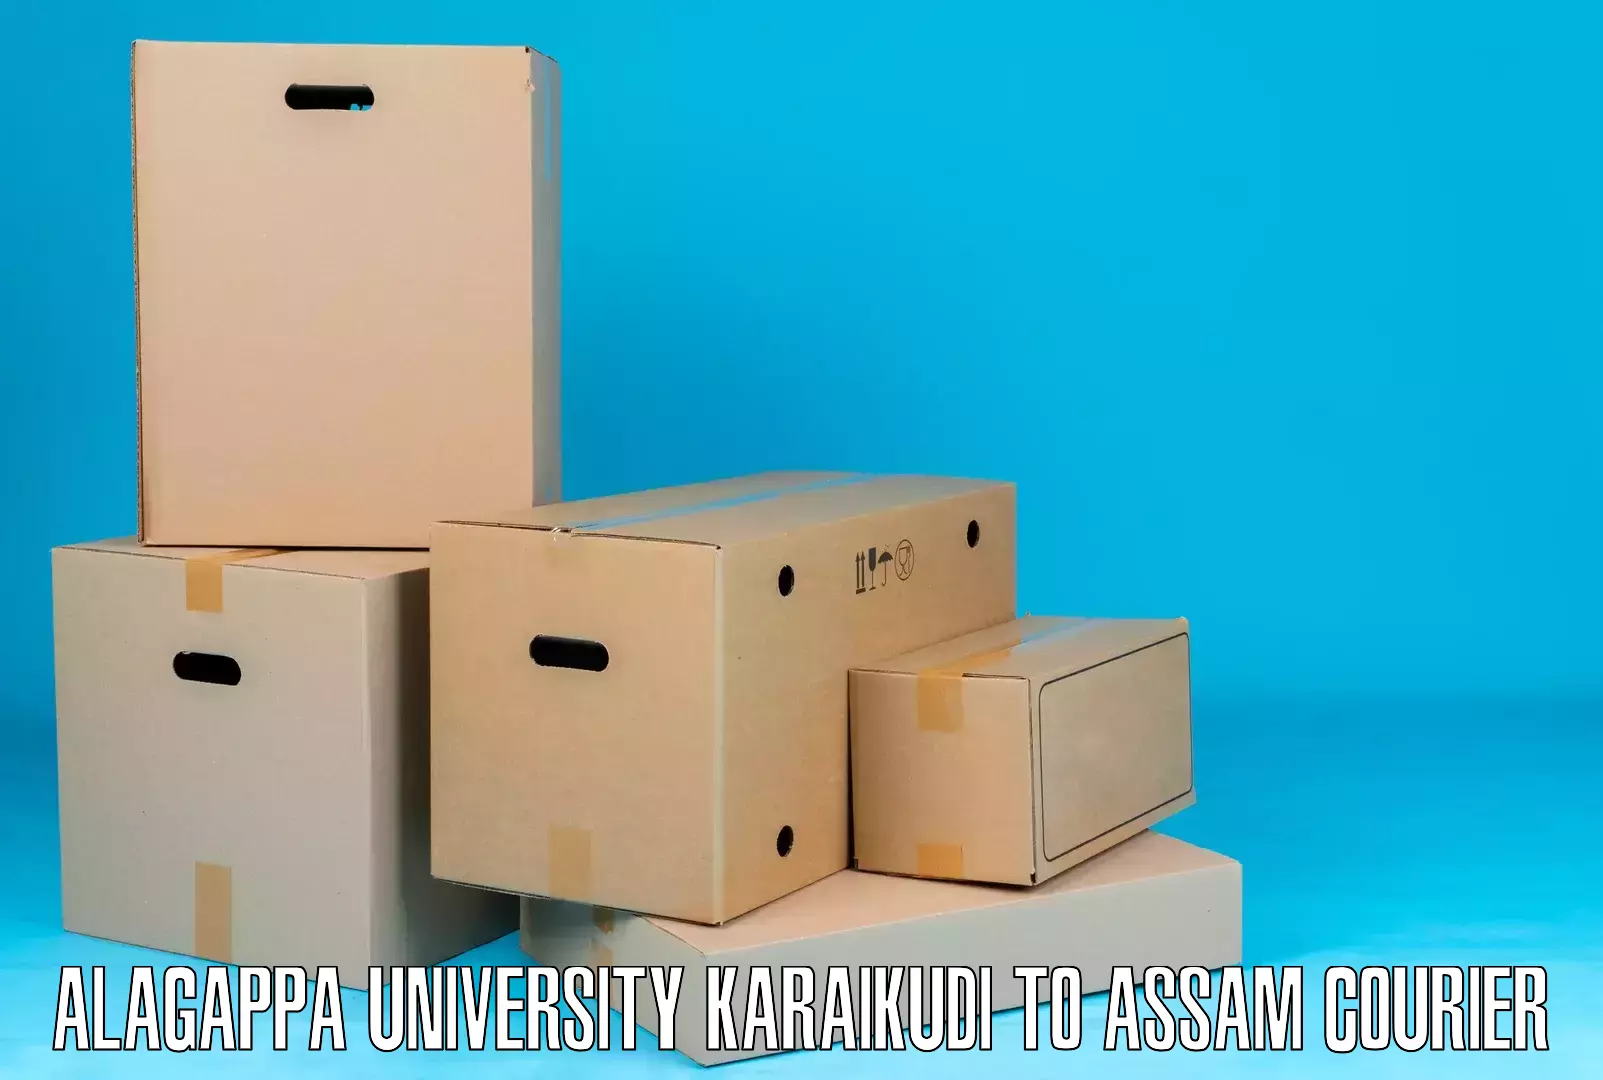 Express package services Alagappa University Karaikudi to Noonmati